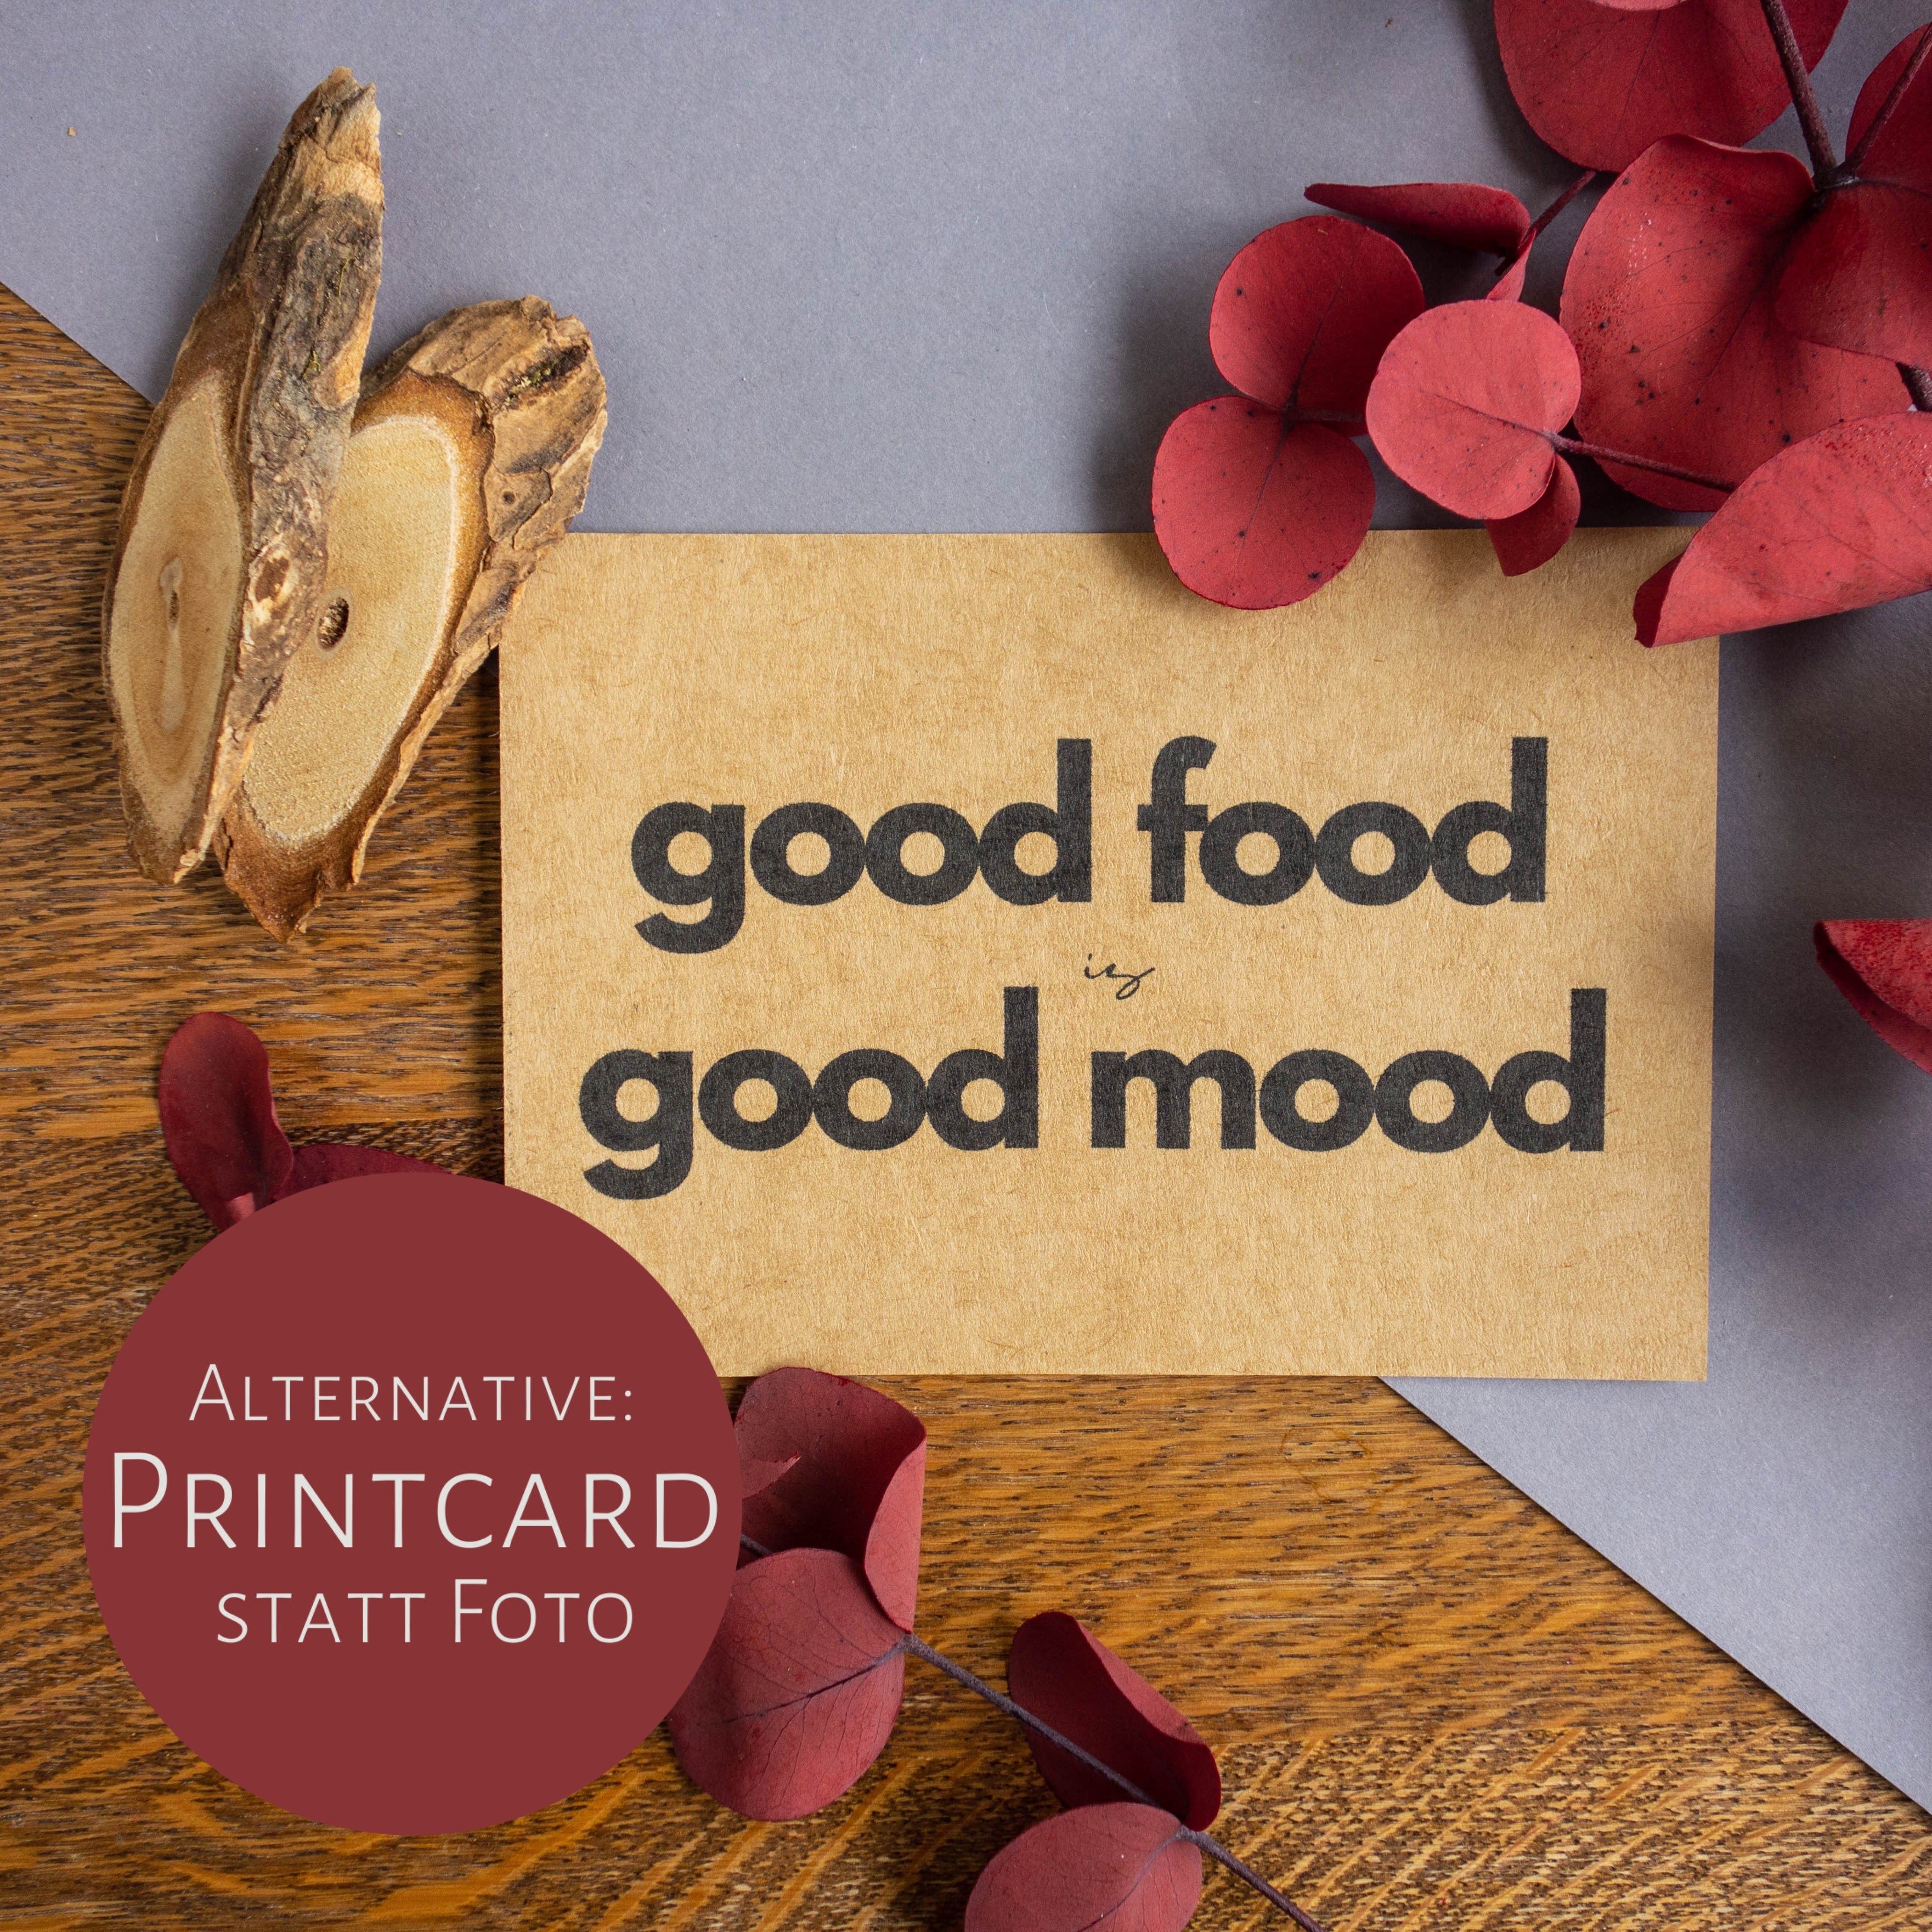 Kraftpapier mit Aufdruck "good food is good mood".